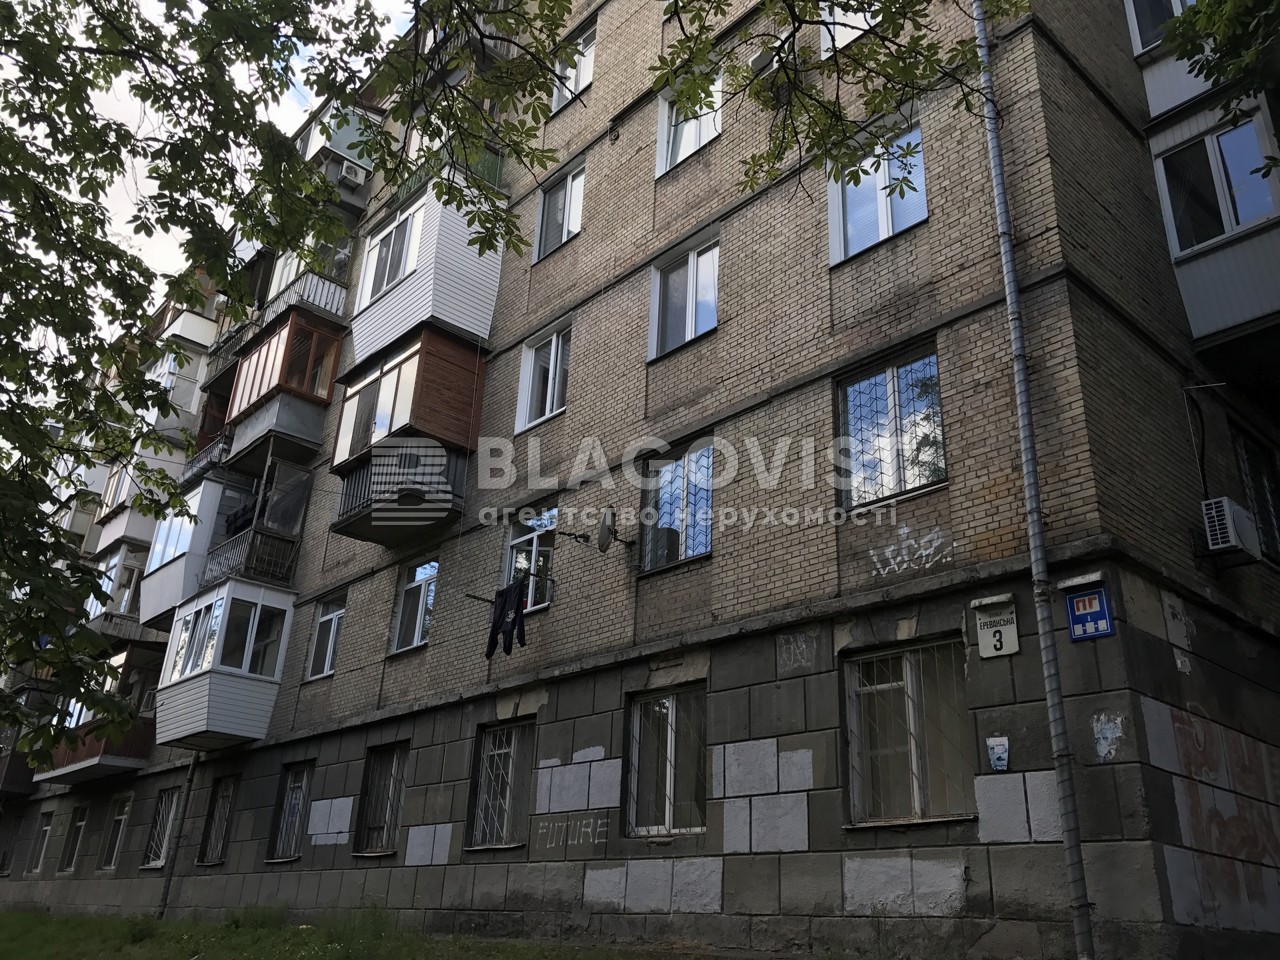  Нежилое помещение, P-31563, Ереванская, Киев - Фото 1